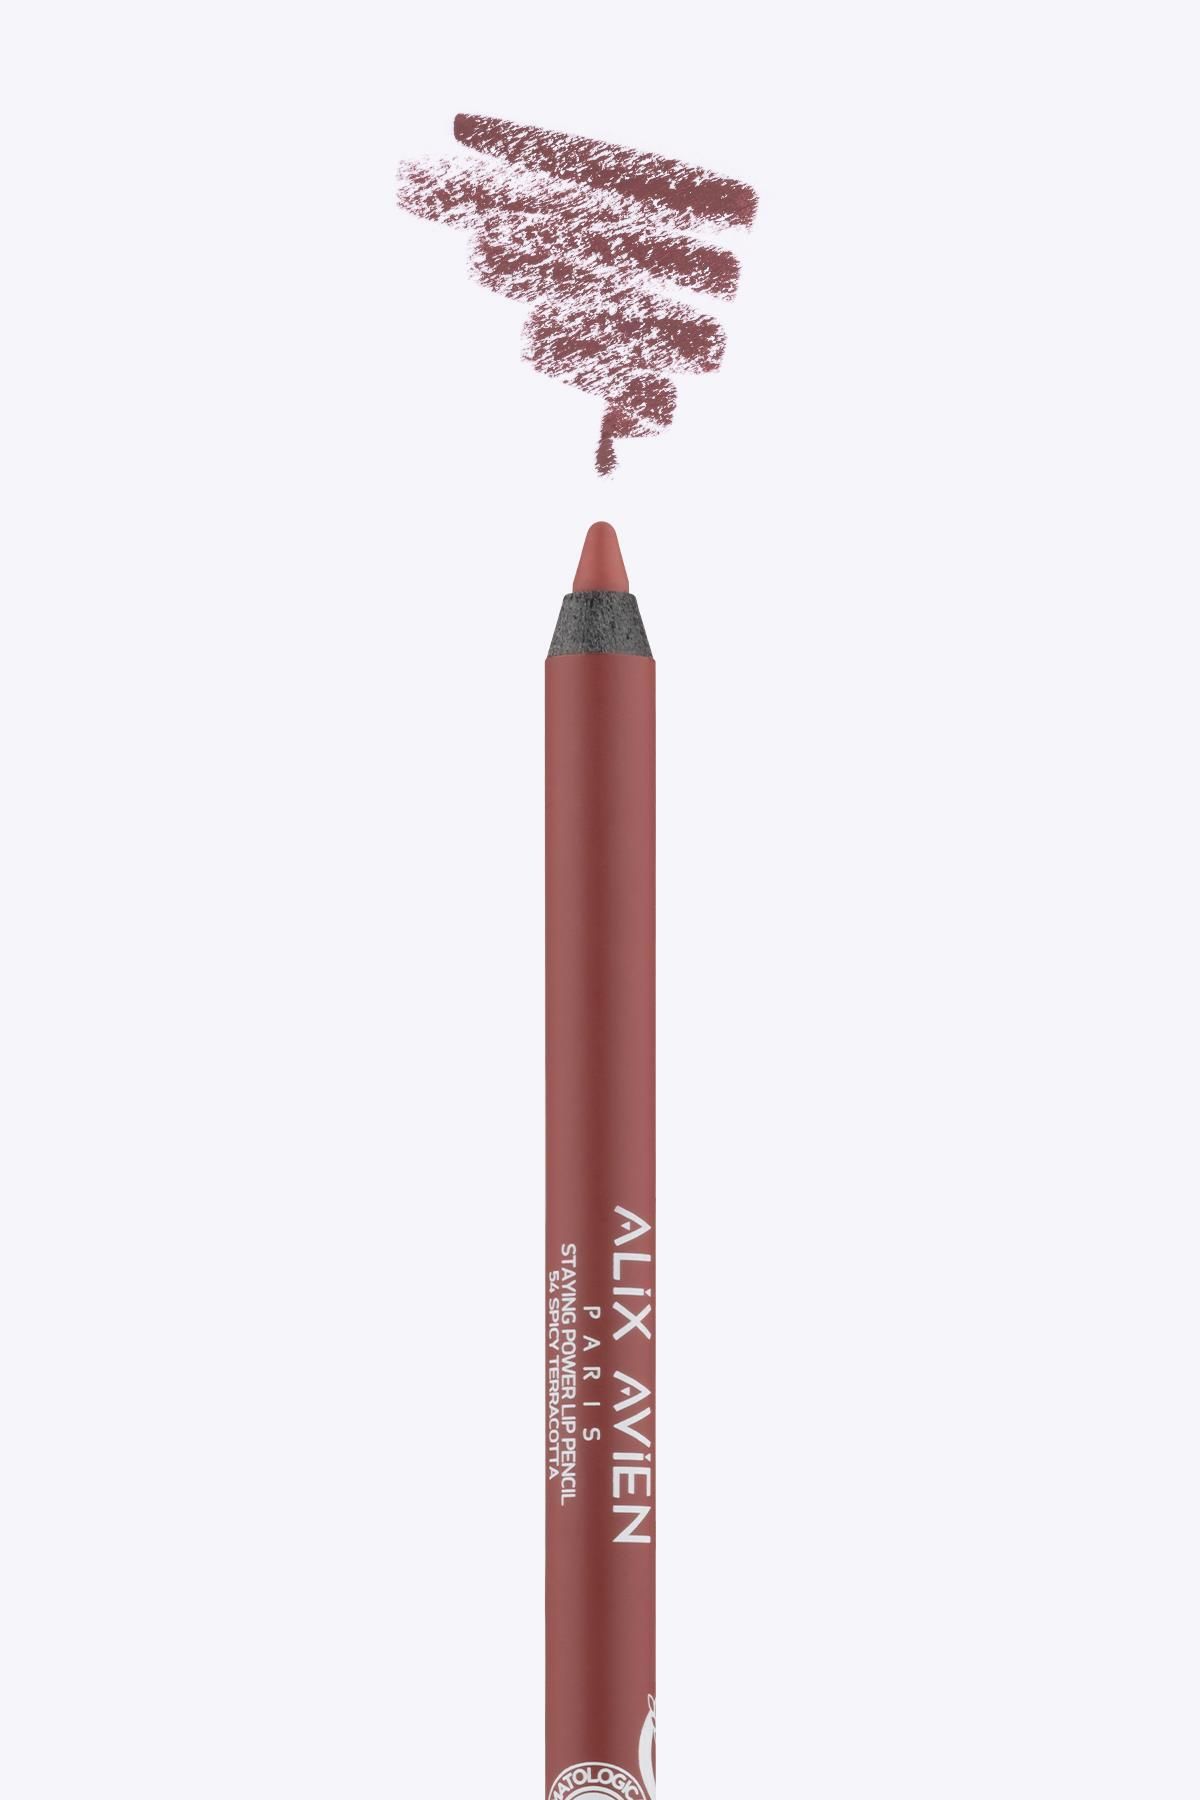 Alix Avien Uzun Süre Kalıcı Suya Dayanıklı Dudak Kalemi - Staying Power Lip Pencil 54 Spicy Terracotta